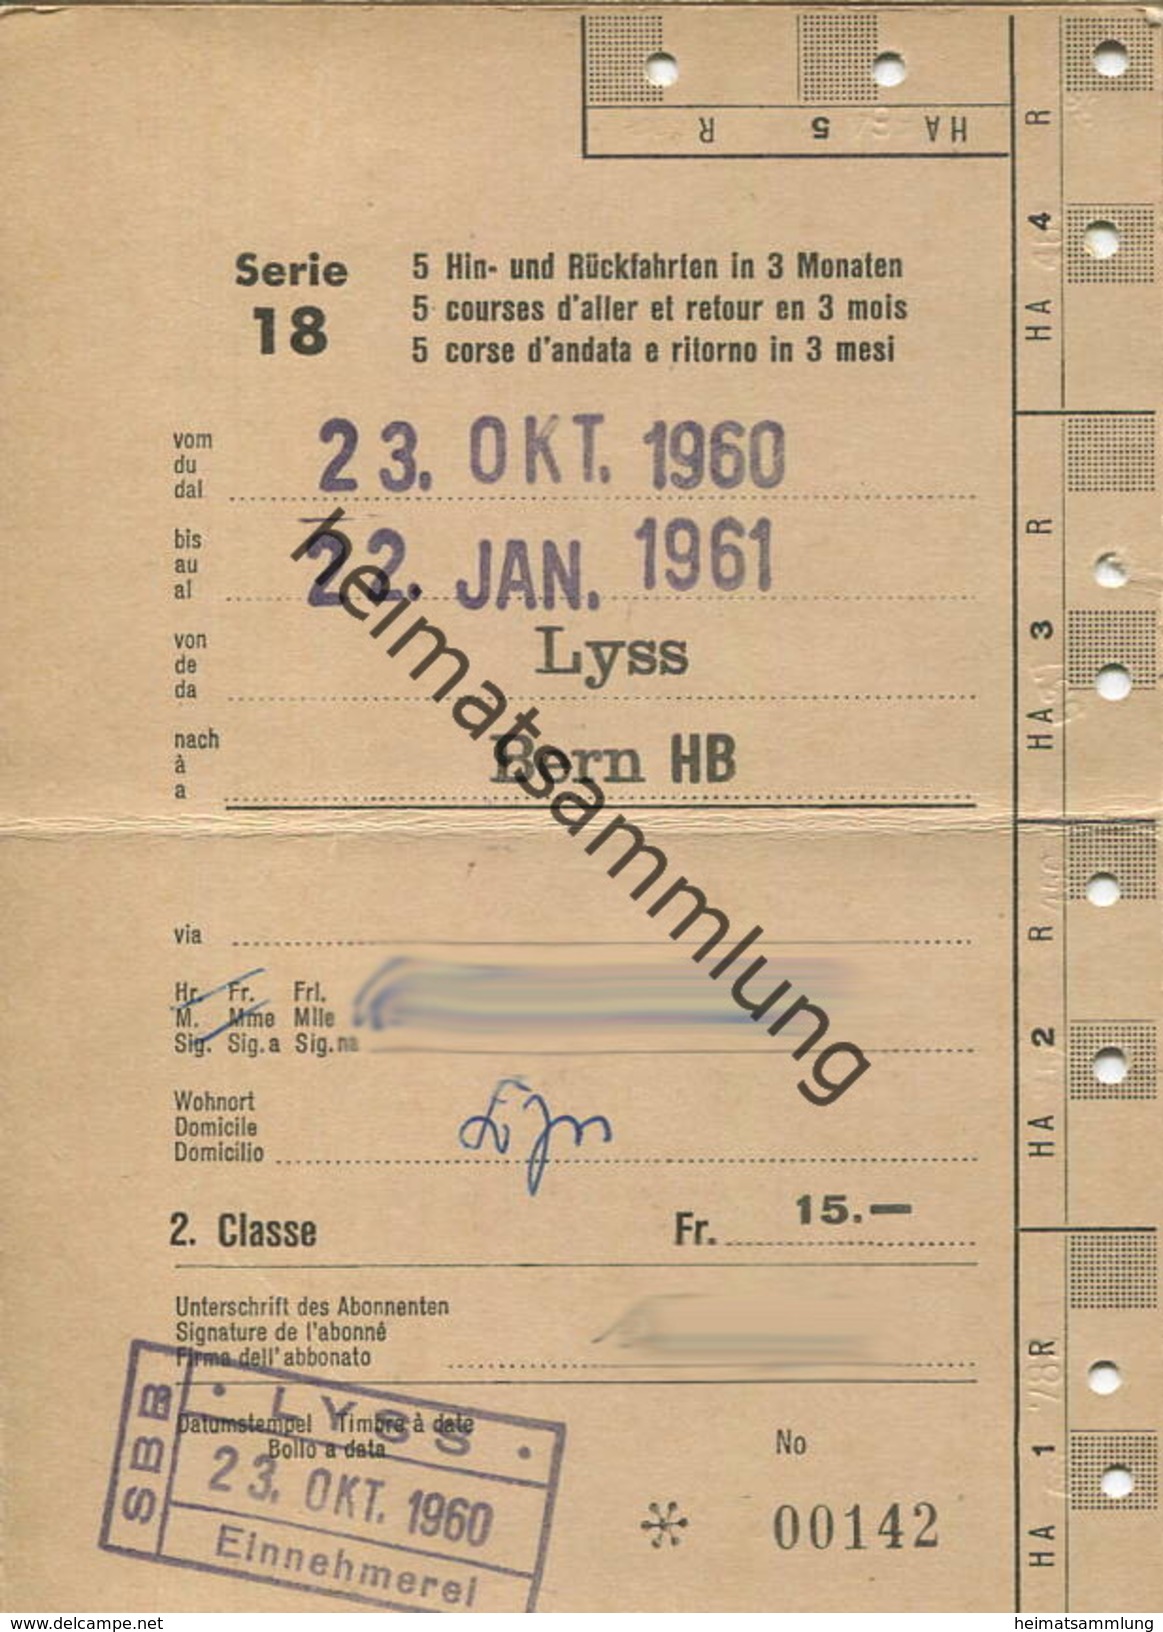 Schweiz - SBB - Allgemeines Abonnement Serie 18 5 Hin- Und Rückfahrten In 3 Monaten - Lyss Bern 1960 - Europe